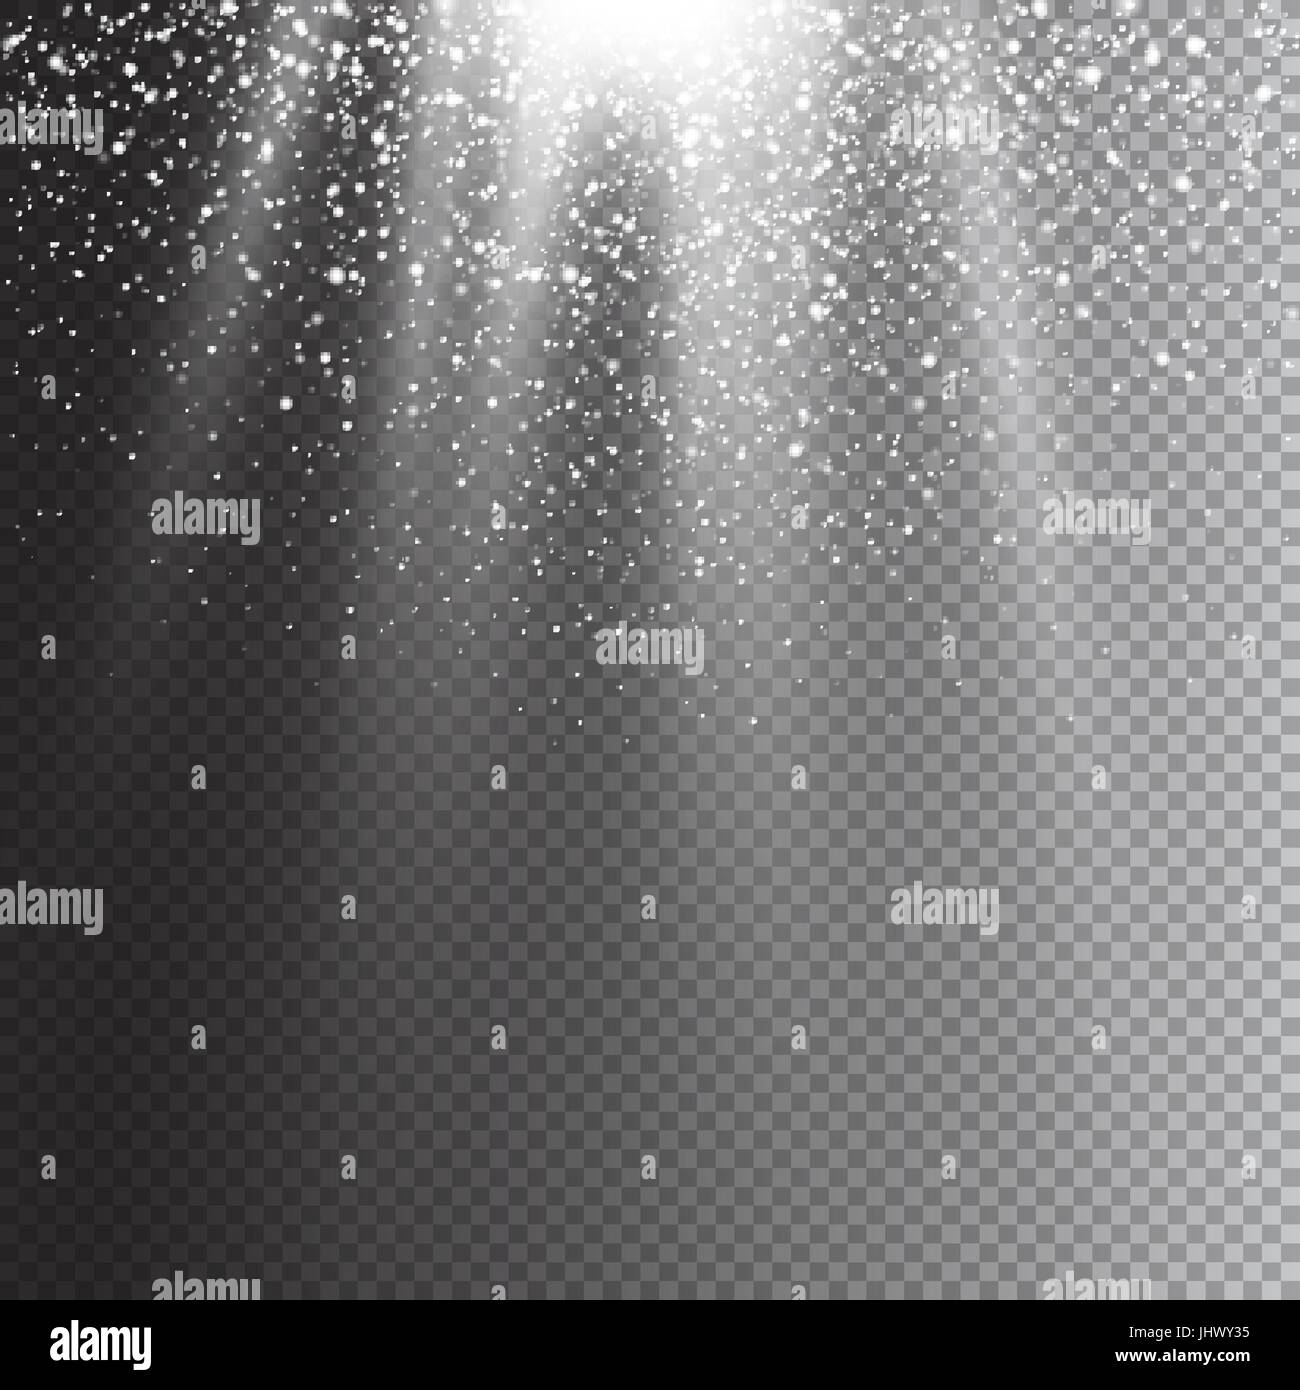 Realistische fallenden Schneeflocken. Auf transparenten Hintergrund isoliert. Weihnachten Laterne Lichteffekt. Vektor-illustration Stock Vektor